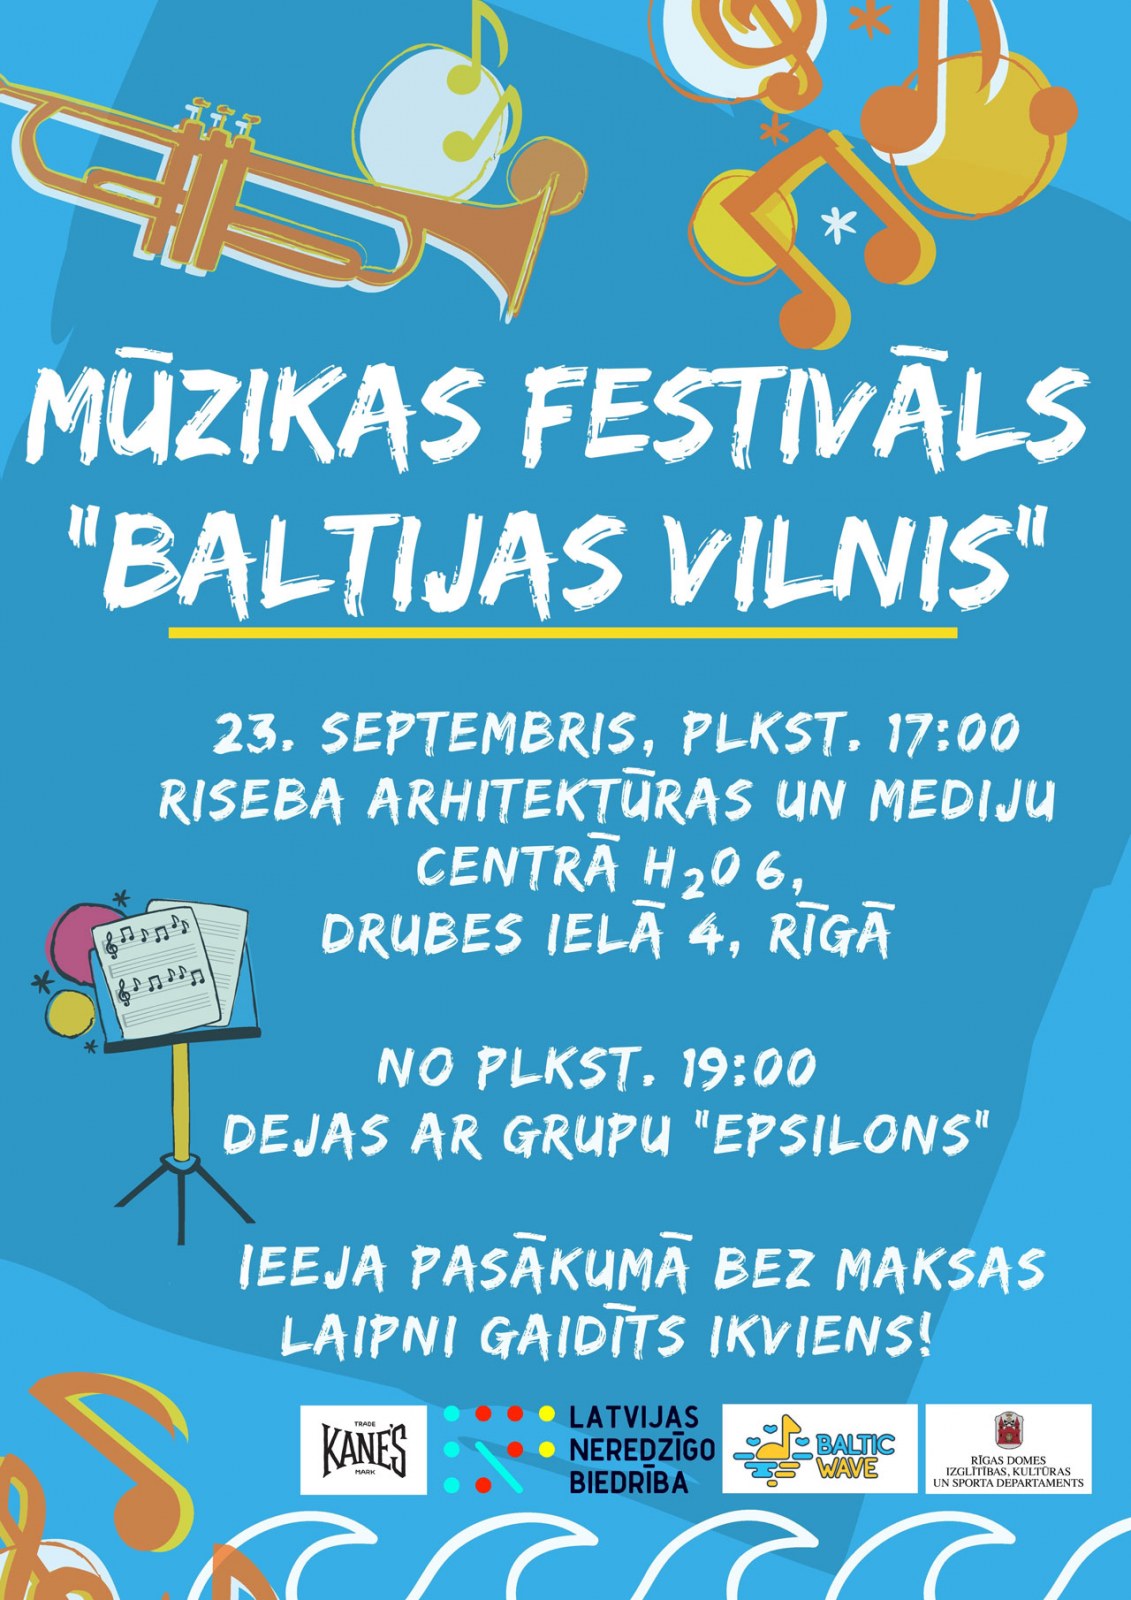 Mūzikas festivāls "Baltijas vilnis" 23.septembrī plkst. 17:00 RISEBA